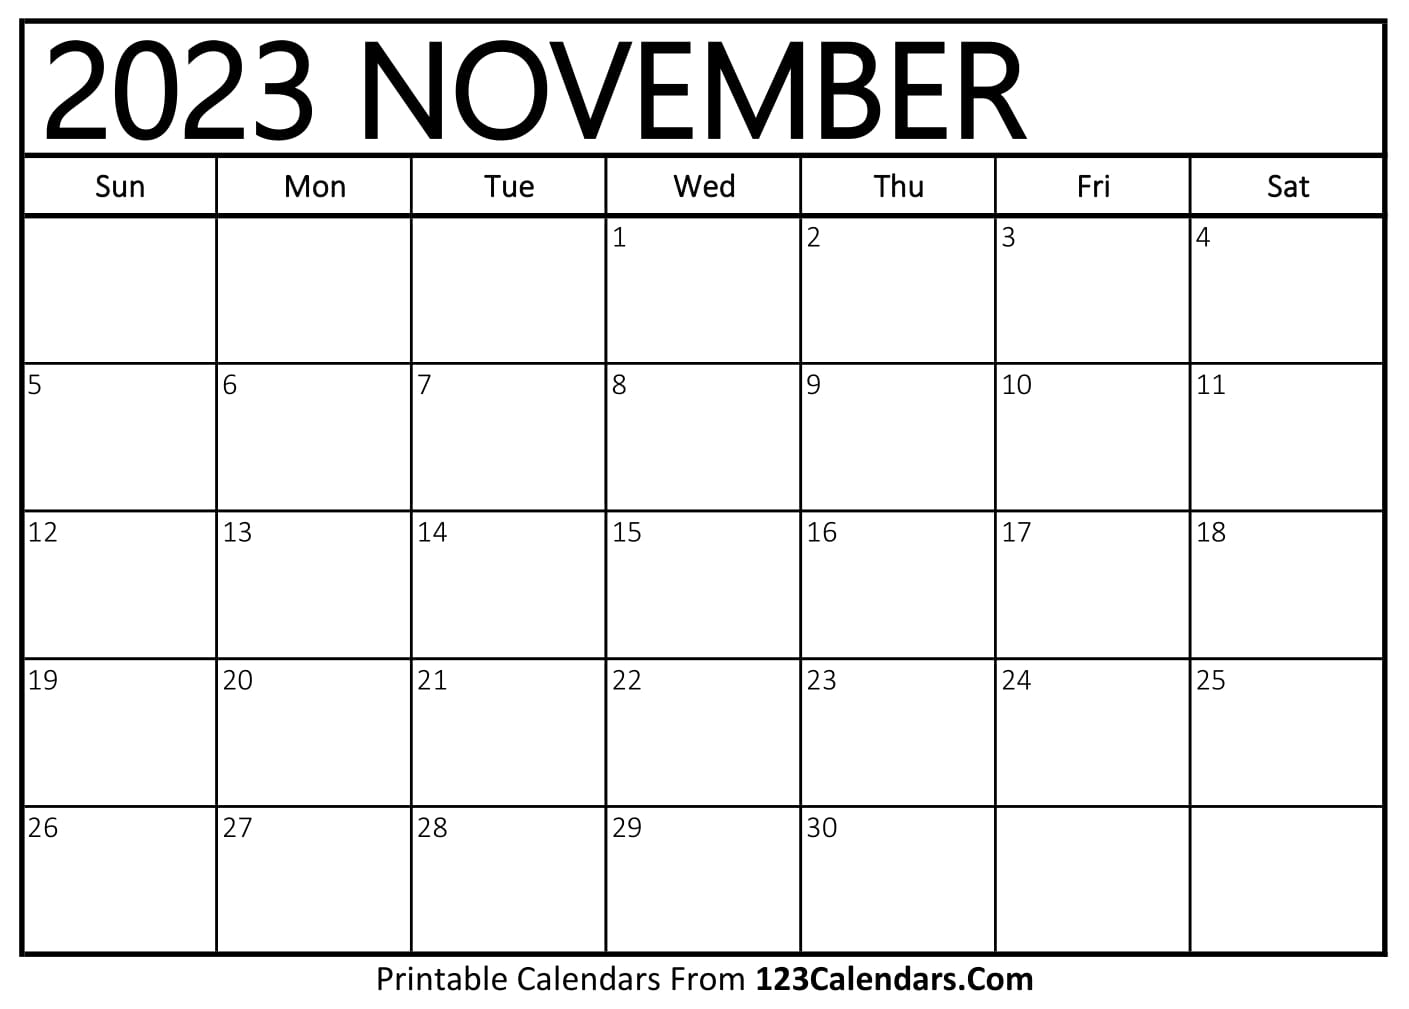 november-2023-calendar-get-latest-map-update